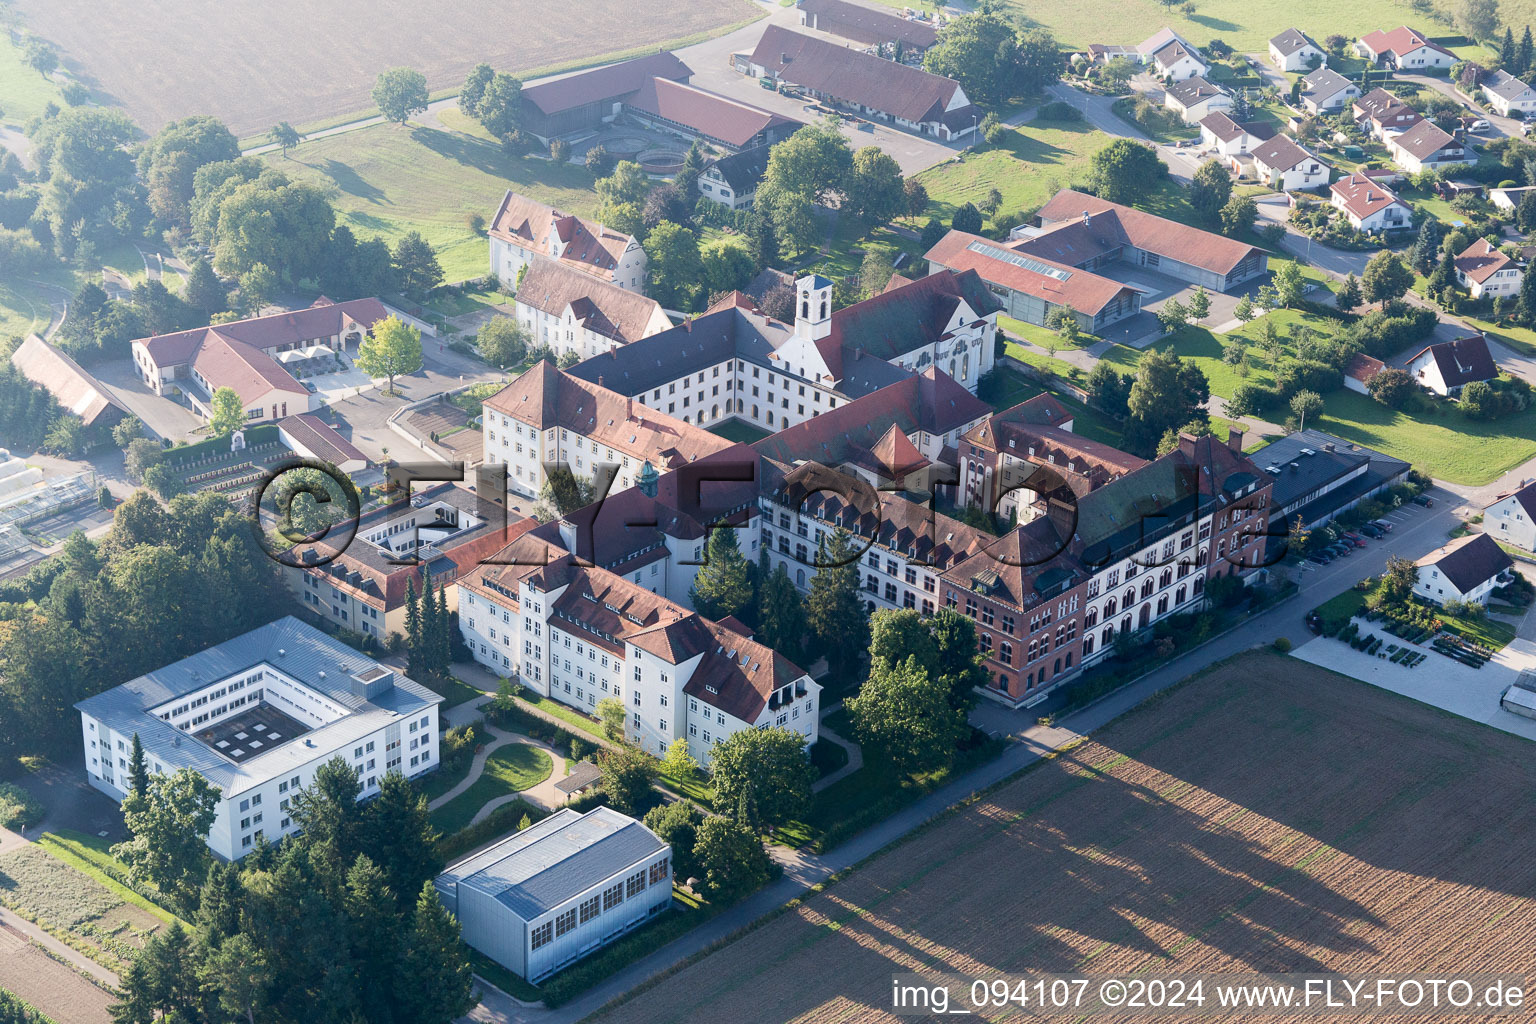 Vue aérienne de Monastère de Siessen à Bad Saulgau dans le département Bade-Wurtemberg, Allemagne